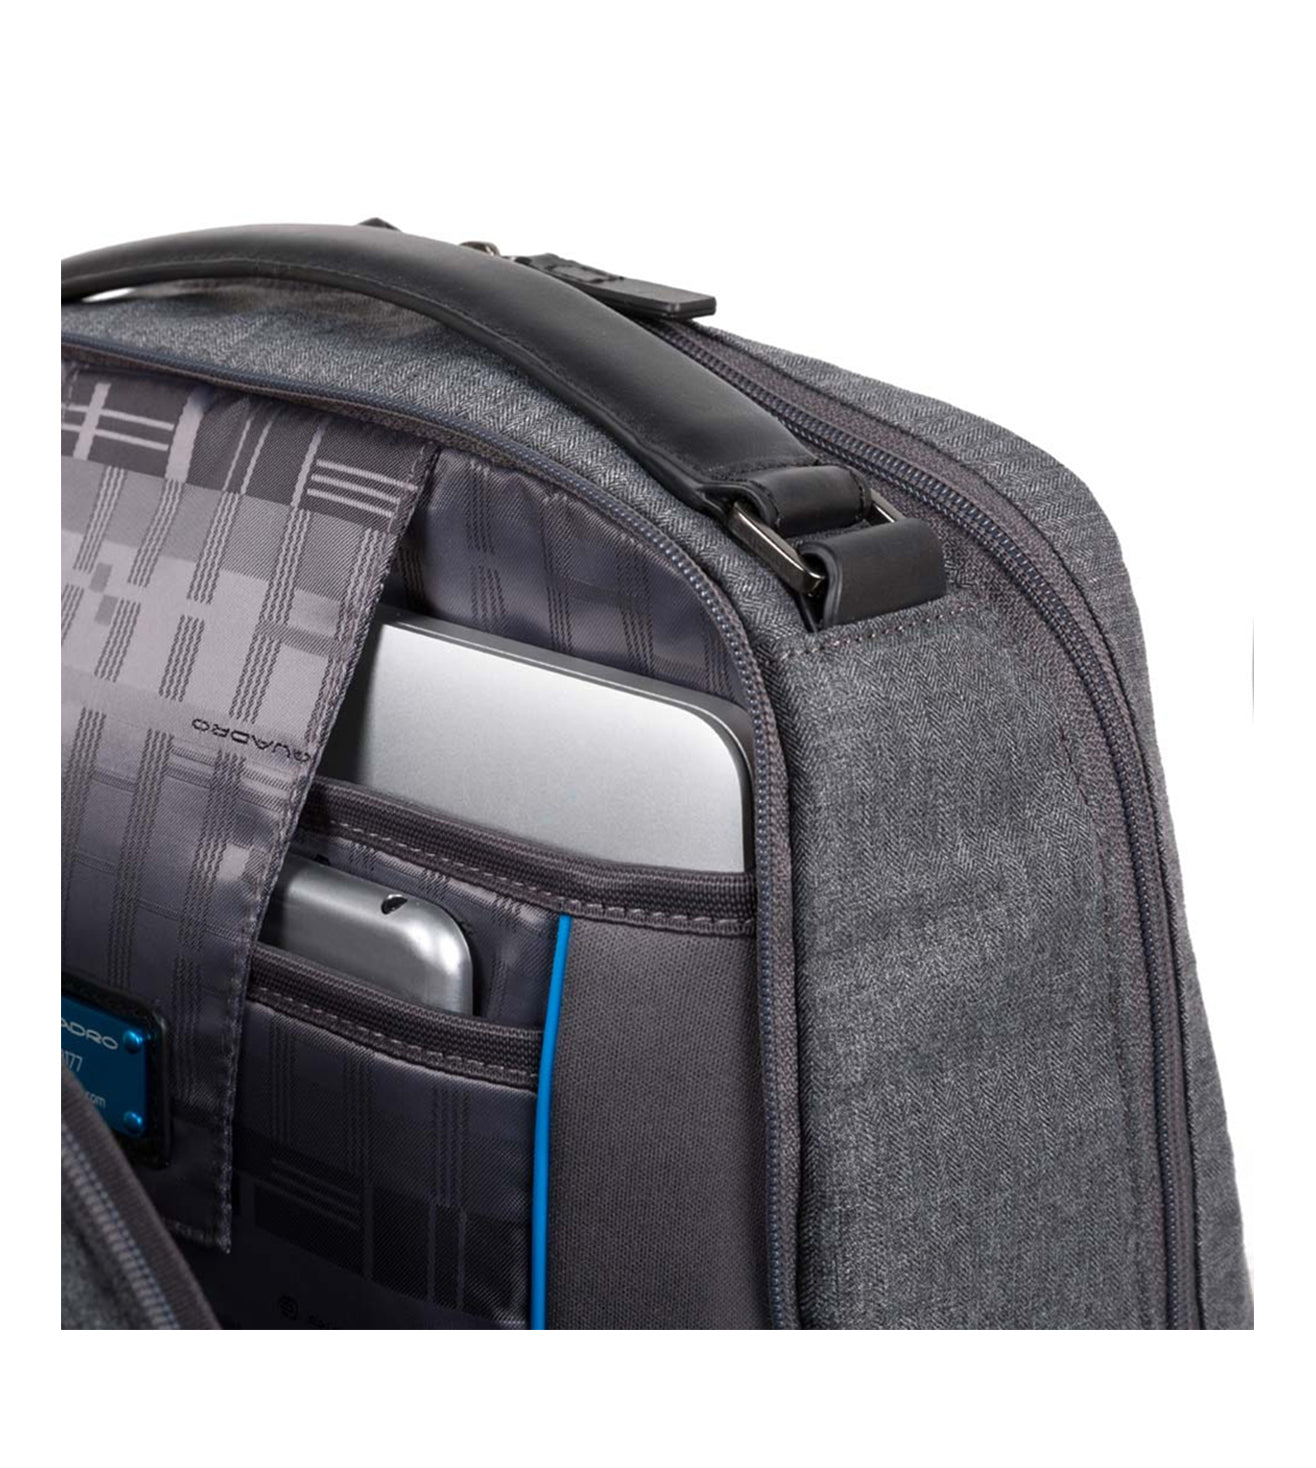 Piquadro Ross Unisex Backpack